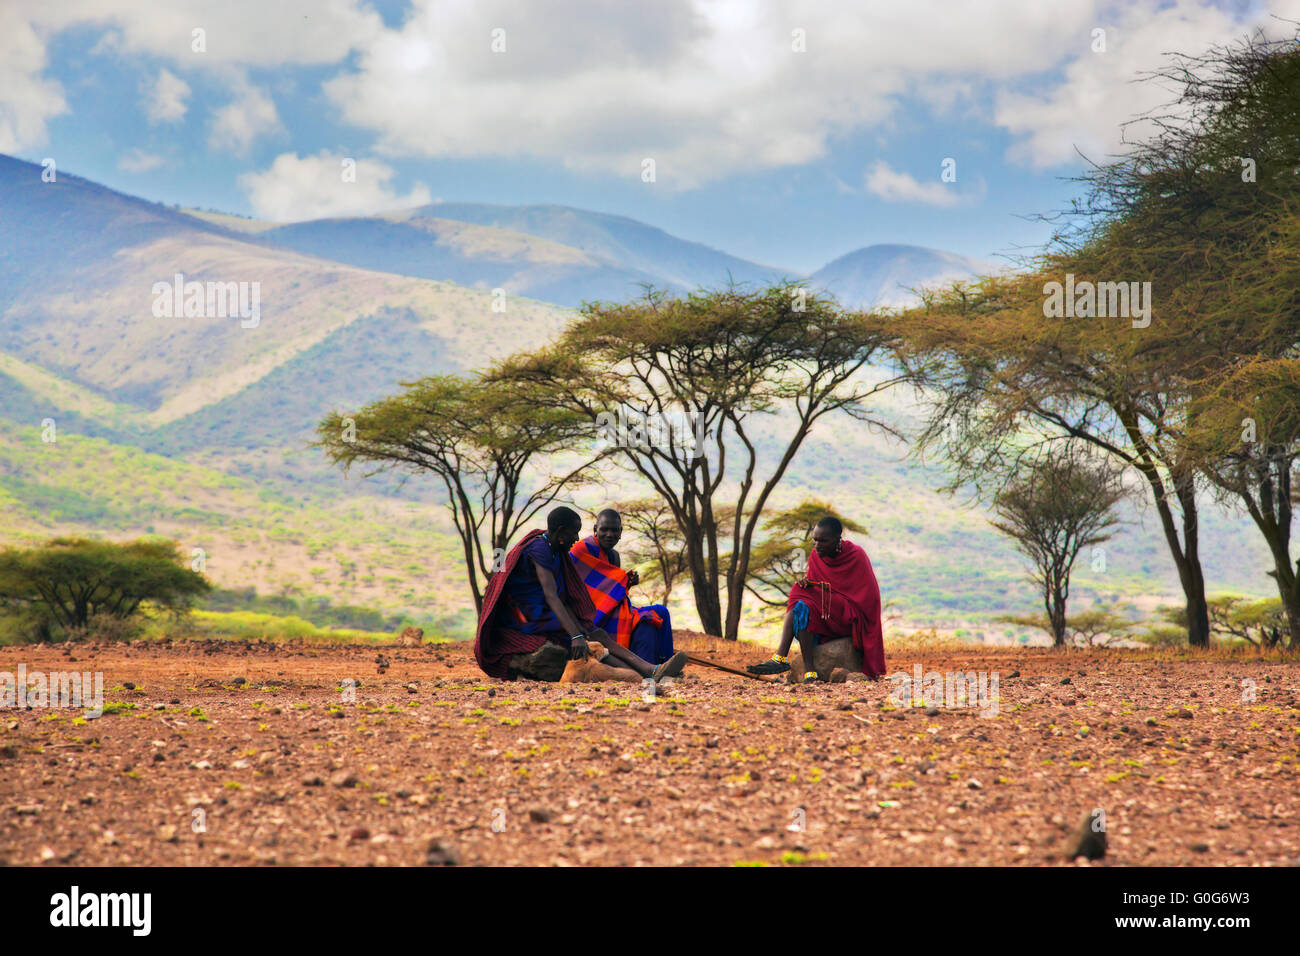 Les hommes de maasai assis. Paysage de savane en Tanzanie, Afrique Banque D'Images